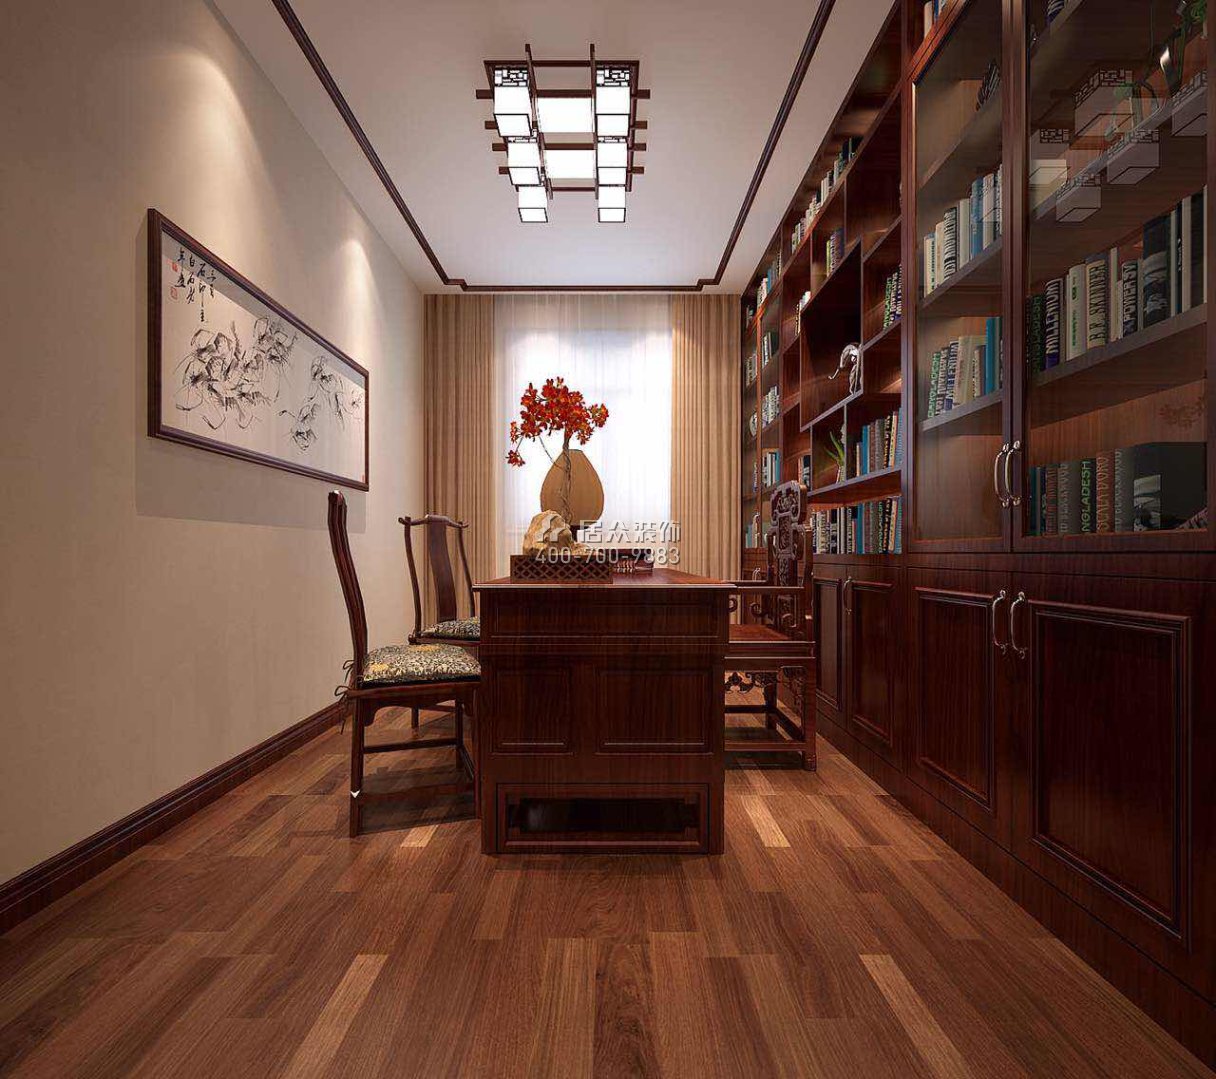 德馨园180平方米中式风格平层户型书房装修效果图